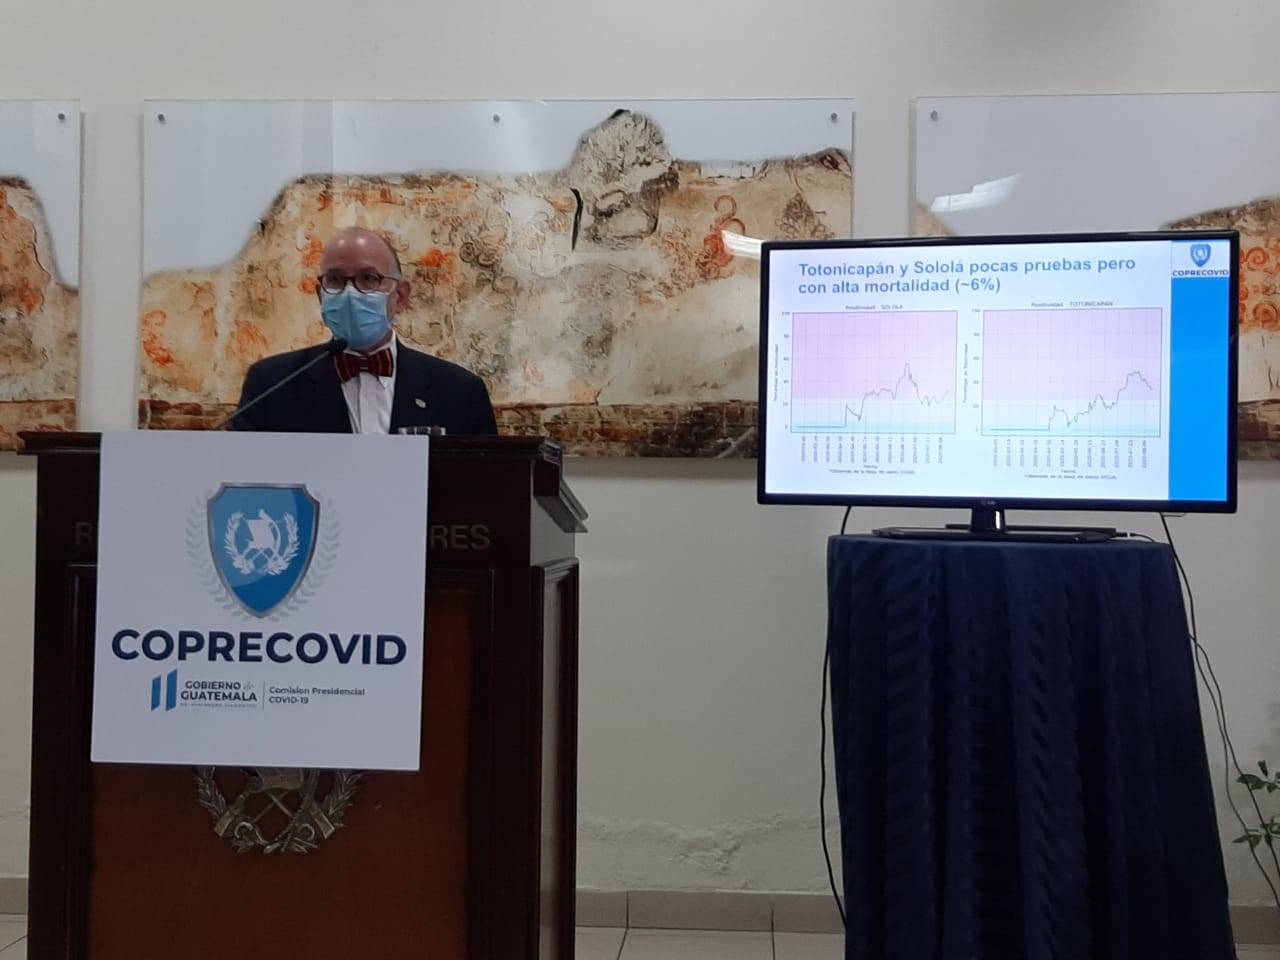 El nivel de mortandad que ha alcanzado el coronavirus en Totonicapán y Sololá preocupa a las autoridades. (Foto Prensa Libre: Andrea Domínguez)